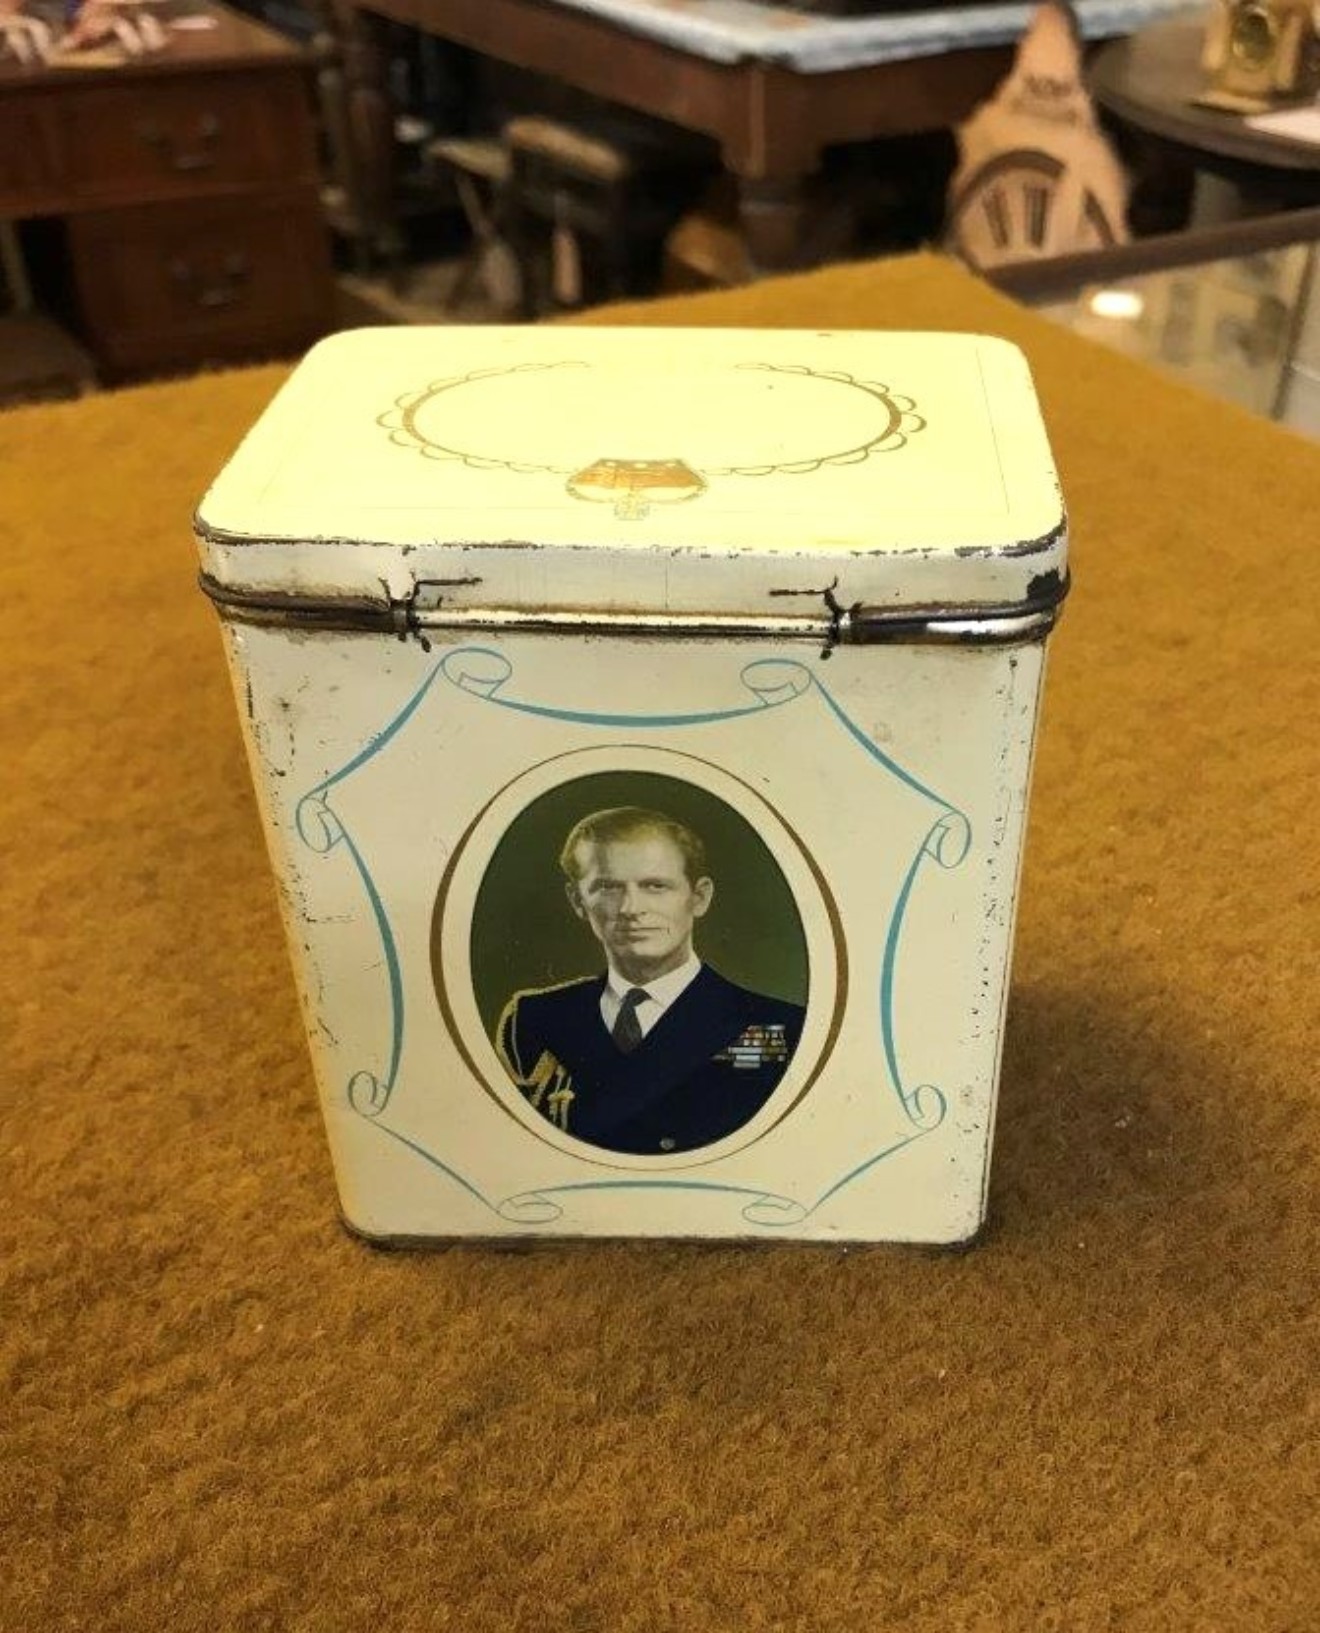 Vintage Queen Elizabeth II Tea Tin